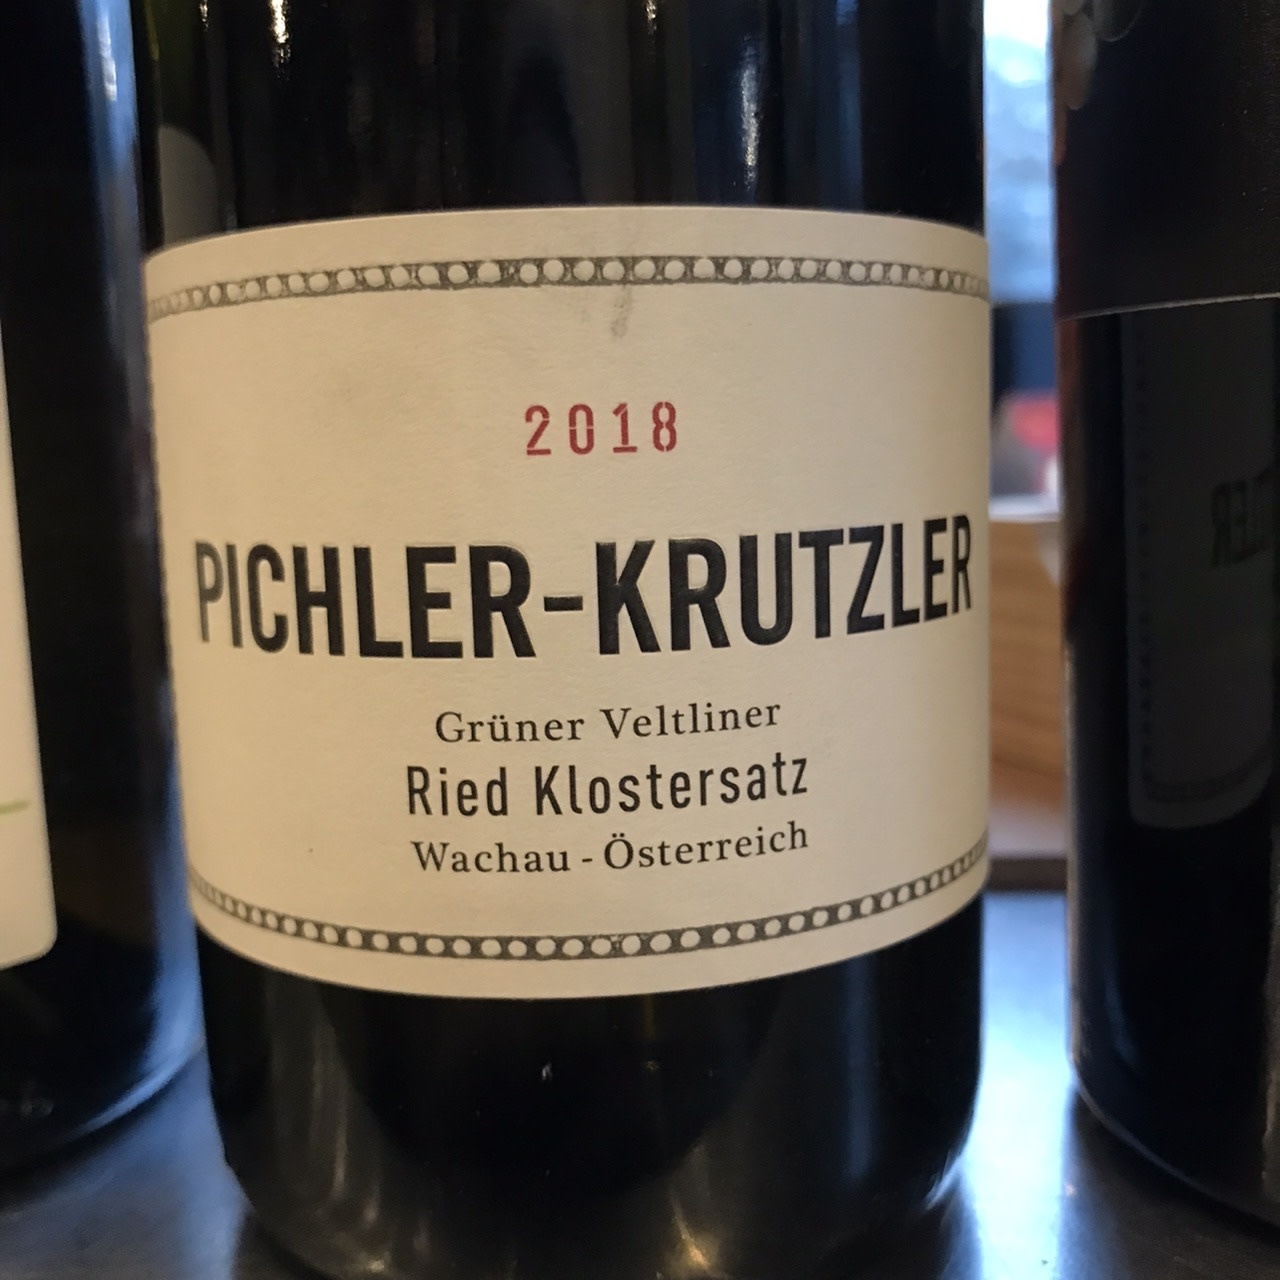 Austria 2018 Pichler-Krutzler Gruner Veltliner Ried Kolstersatz